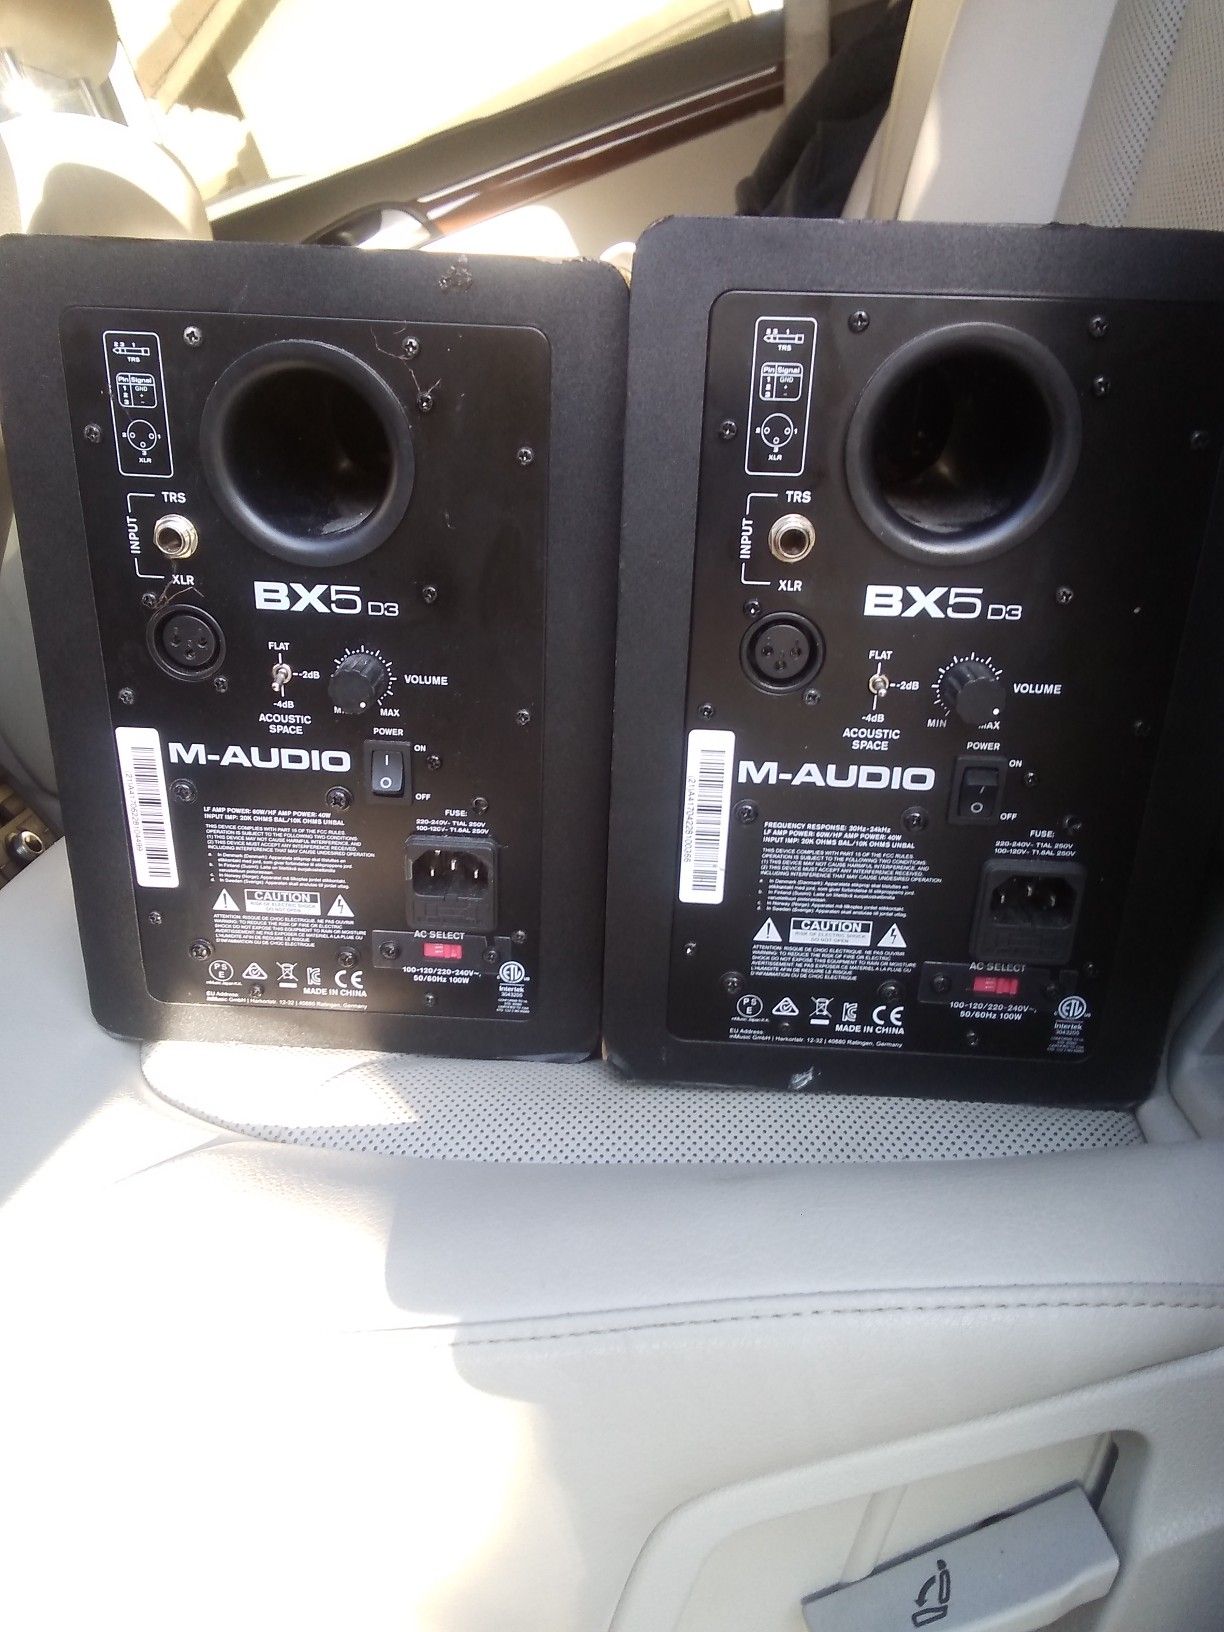 BX5 m-audio studio speakers